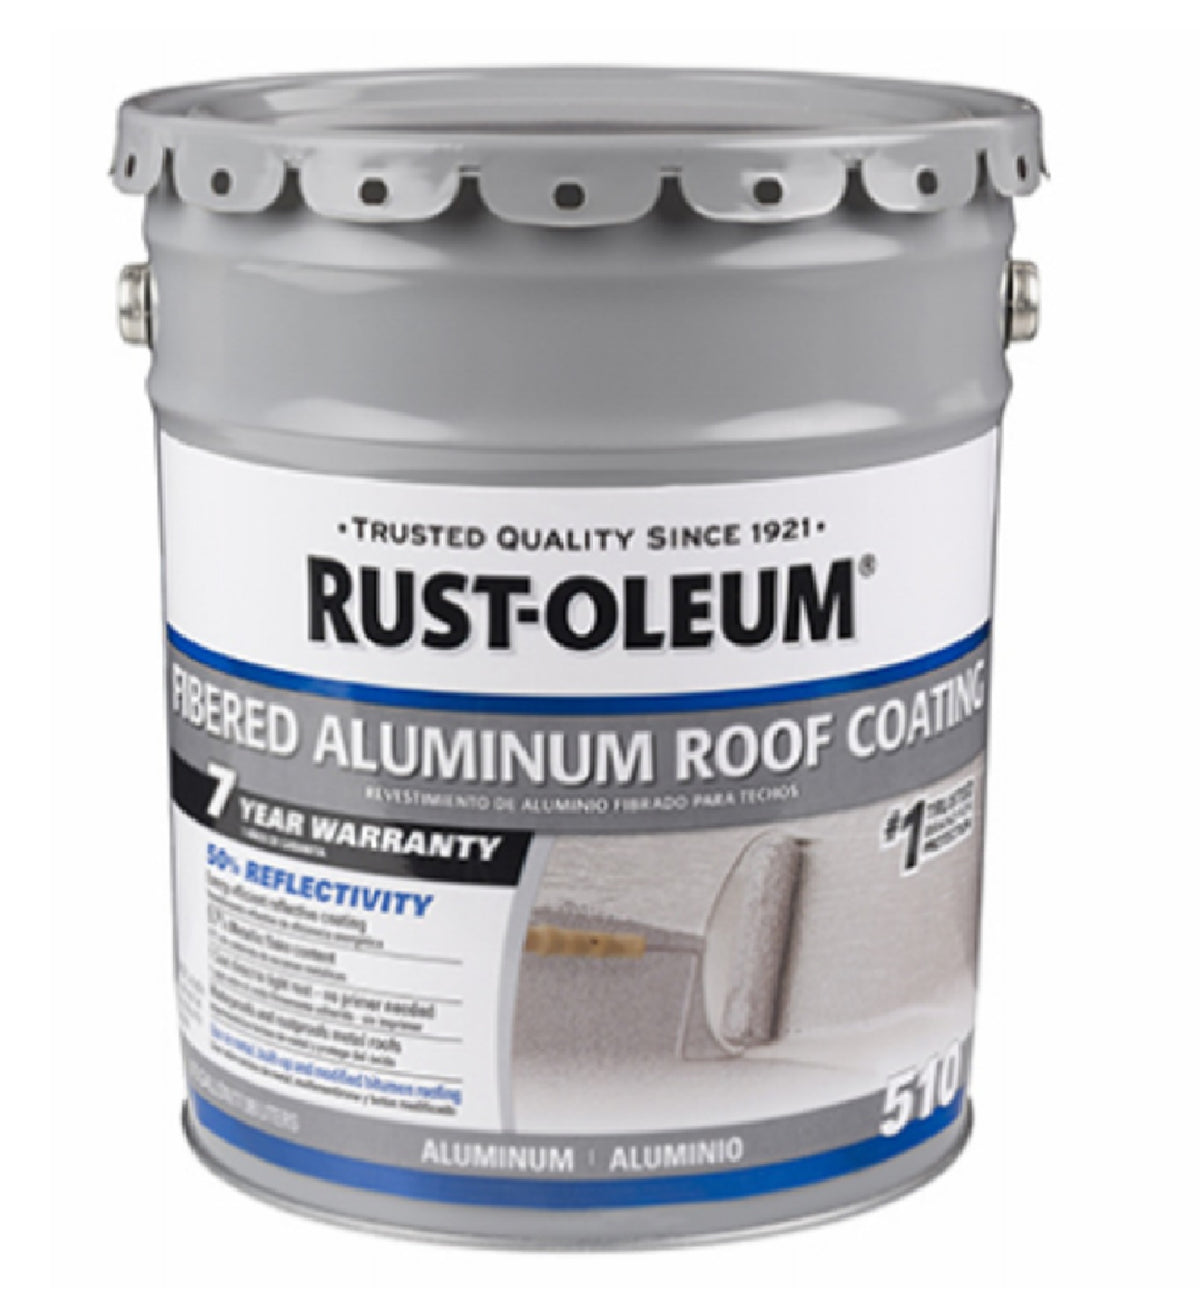 Rust-Oleum 301997 510 Fibered Aluminum Roof Coating, 5 Gallon